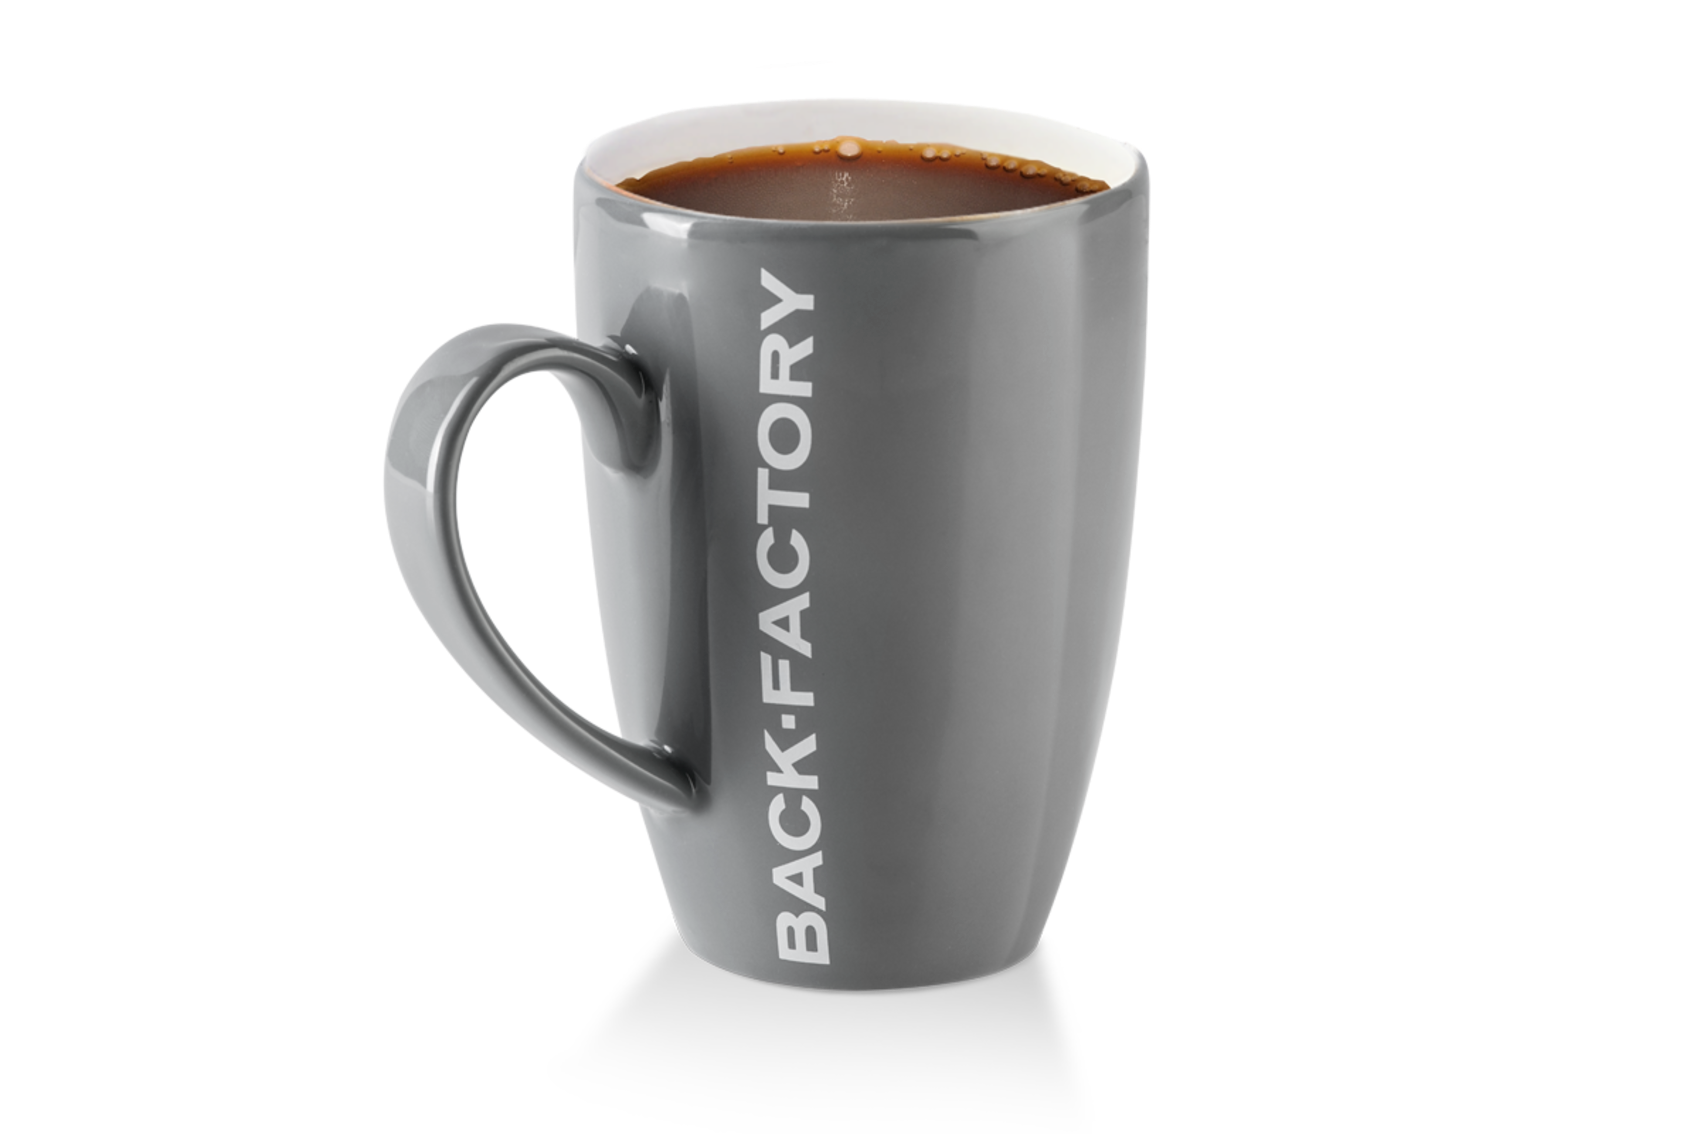 Kaffee schwarz maxi